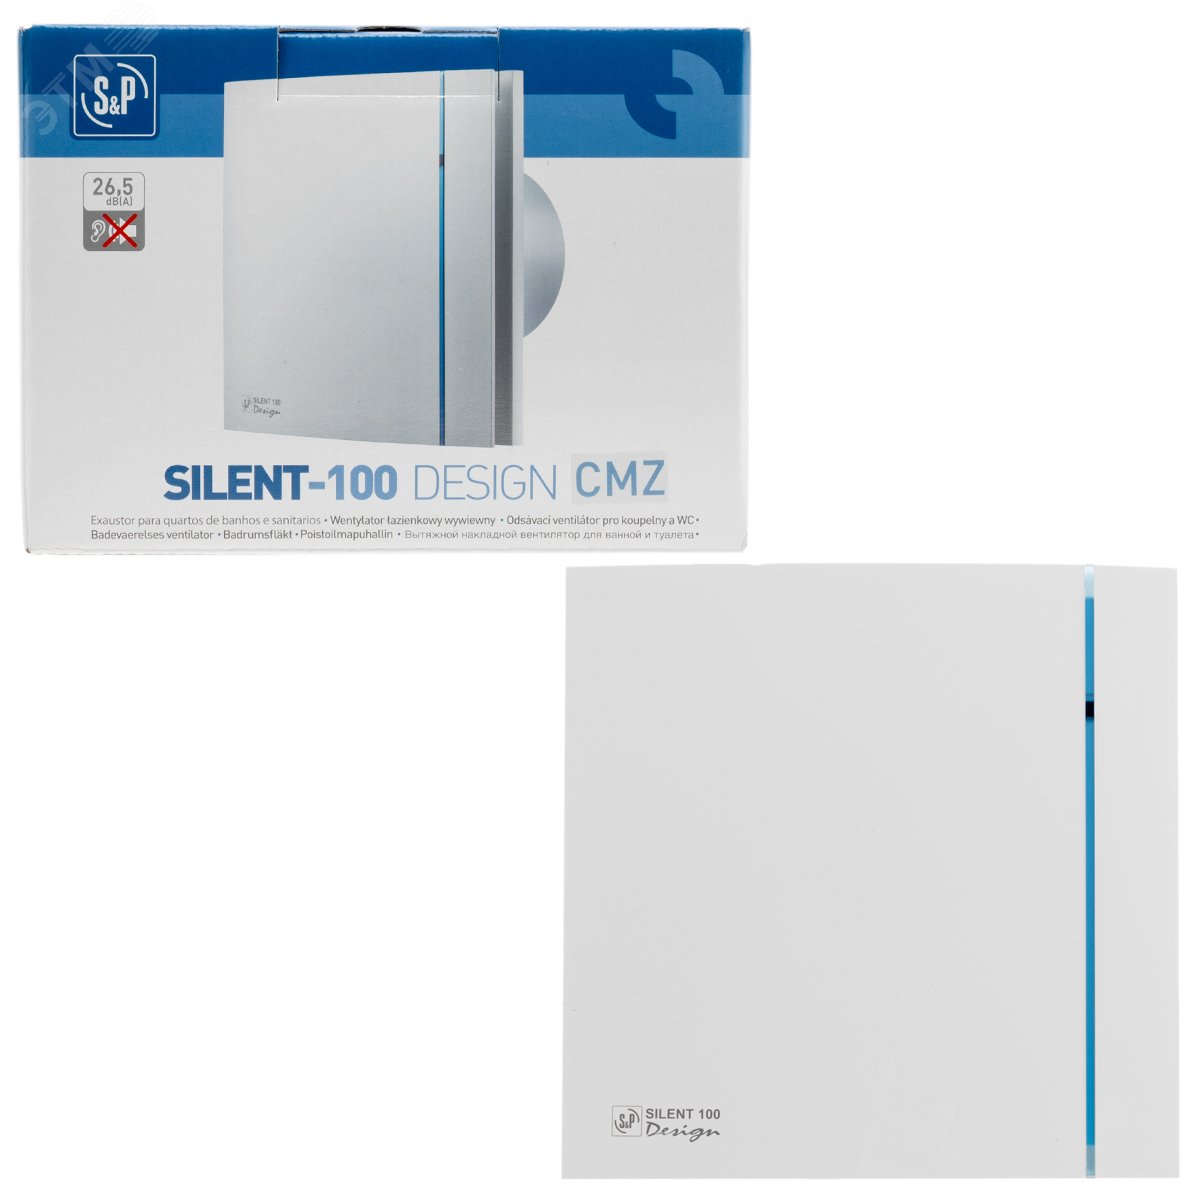 Вентилятор вытяжной Silent-100 CMZ Design со шнуровым выключателем 5210602100 Soler & Palau - превью 4